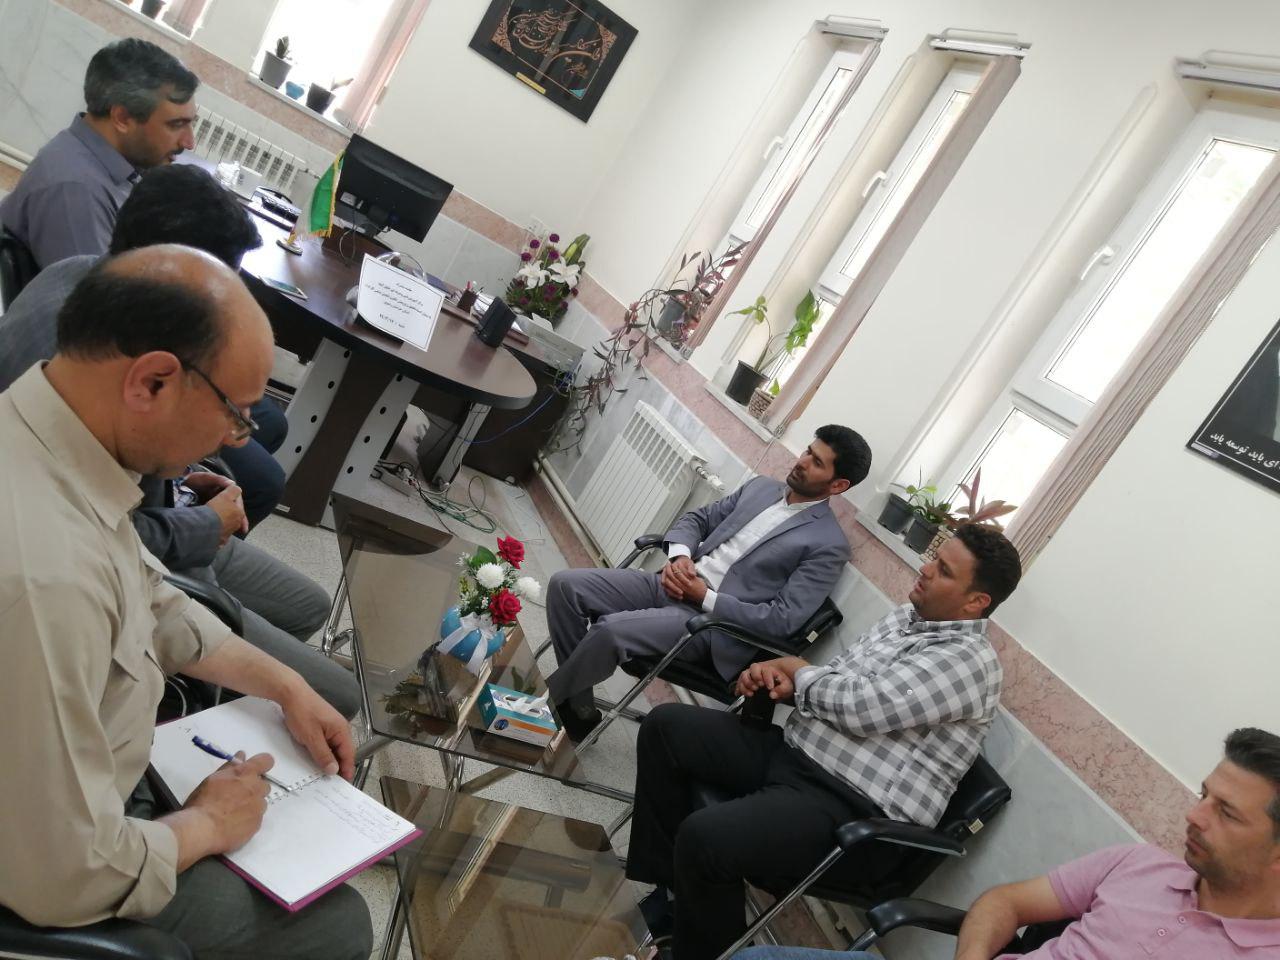  برگزاری جلسه مشترک مرکز آموزش فنی و حرفه ای خلیل آباد با مسئول کمیته تحقیق و پژوهش انجمن صنفی کارگران استان